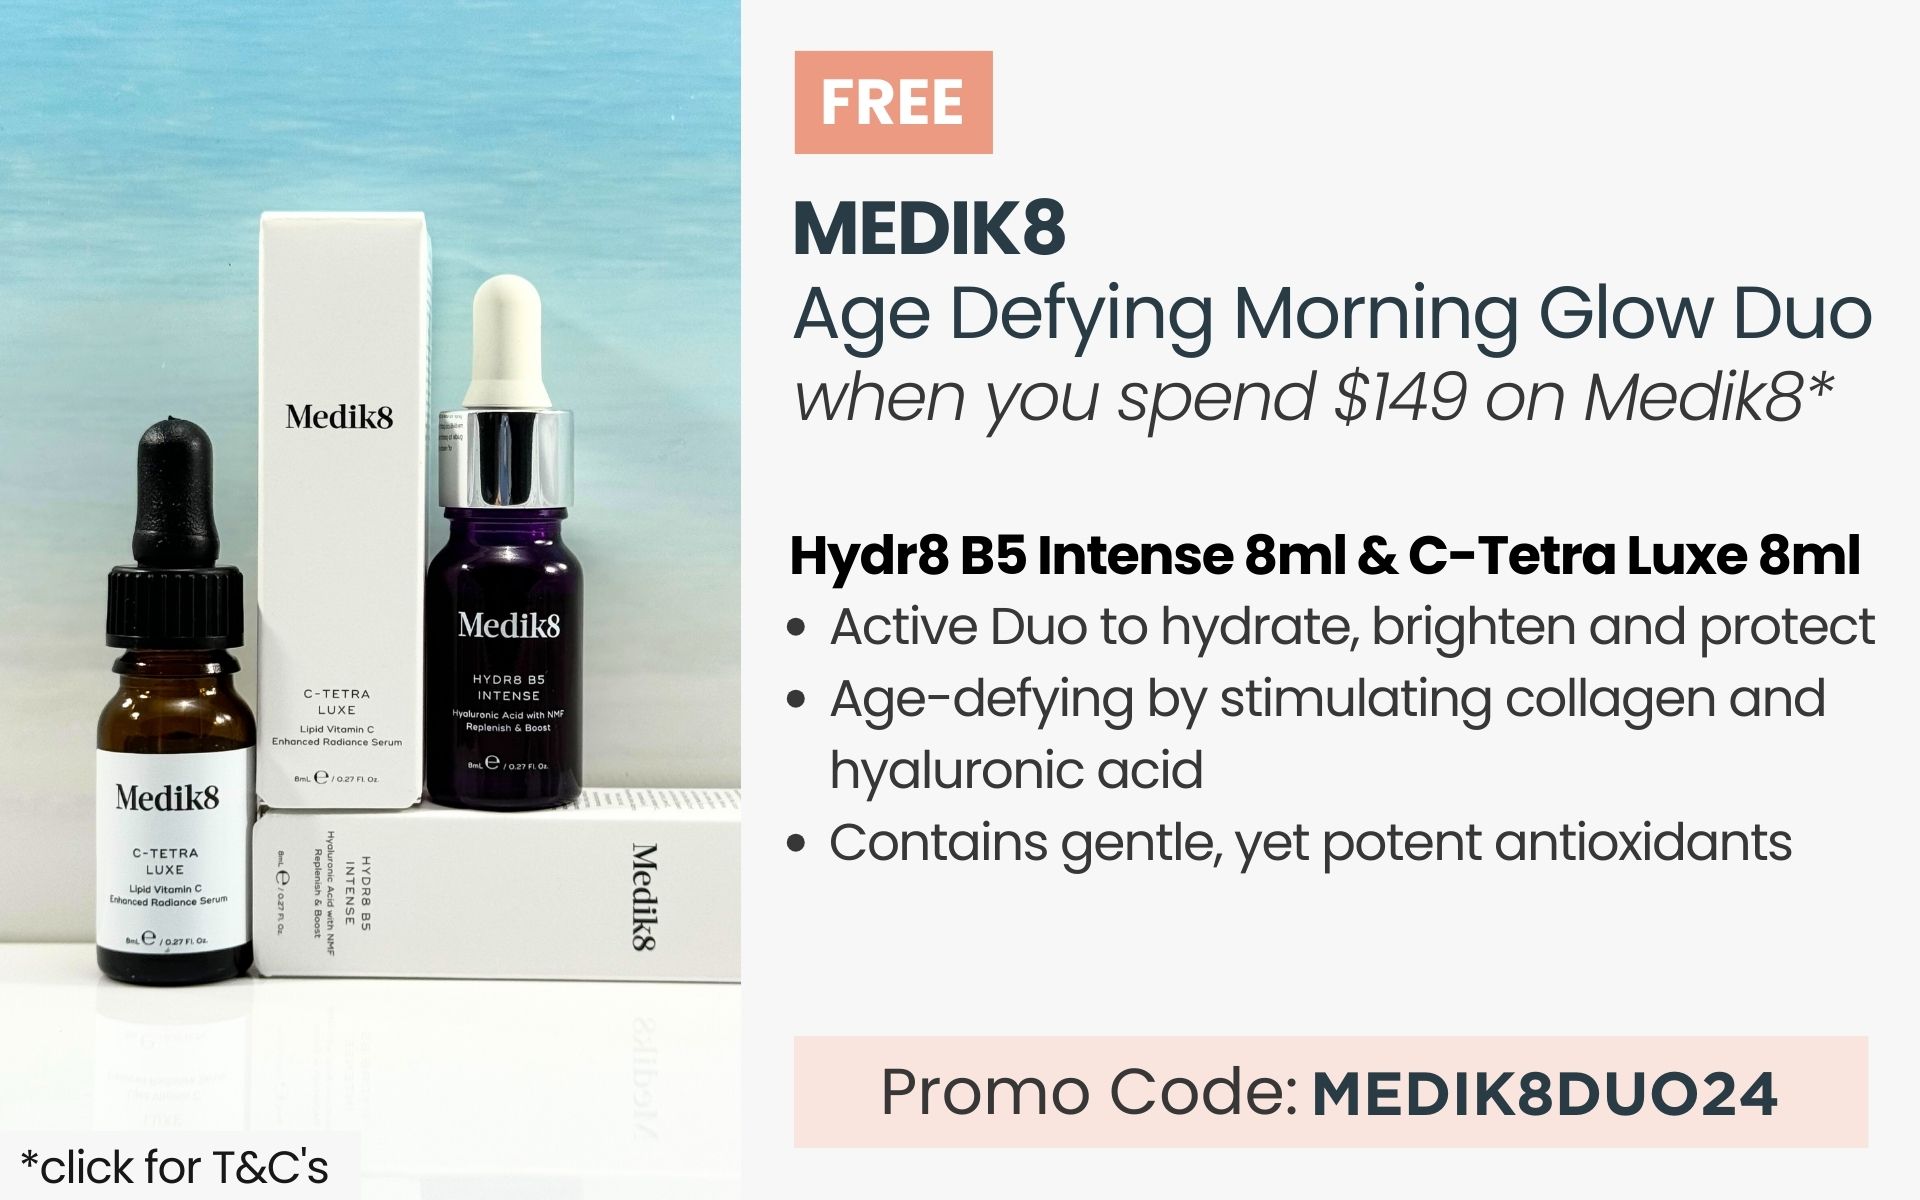 Free Medik8 Age Defying Morning Glow Duo. Min spend $149 on Medi8. Promo code MEDIK8DUO24.